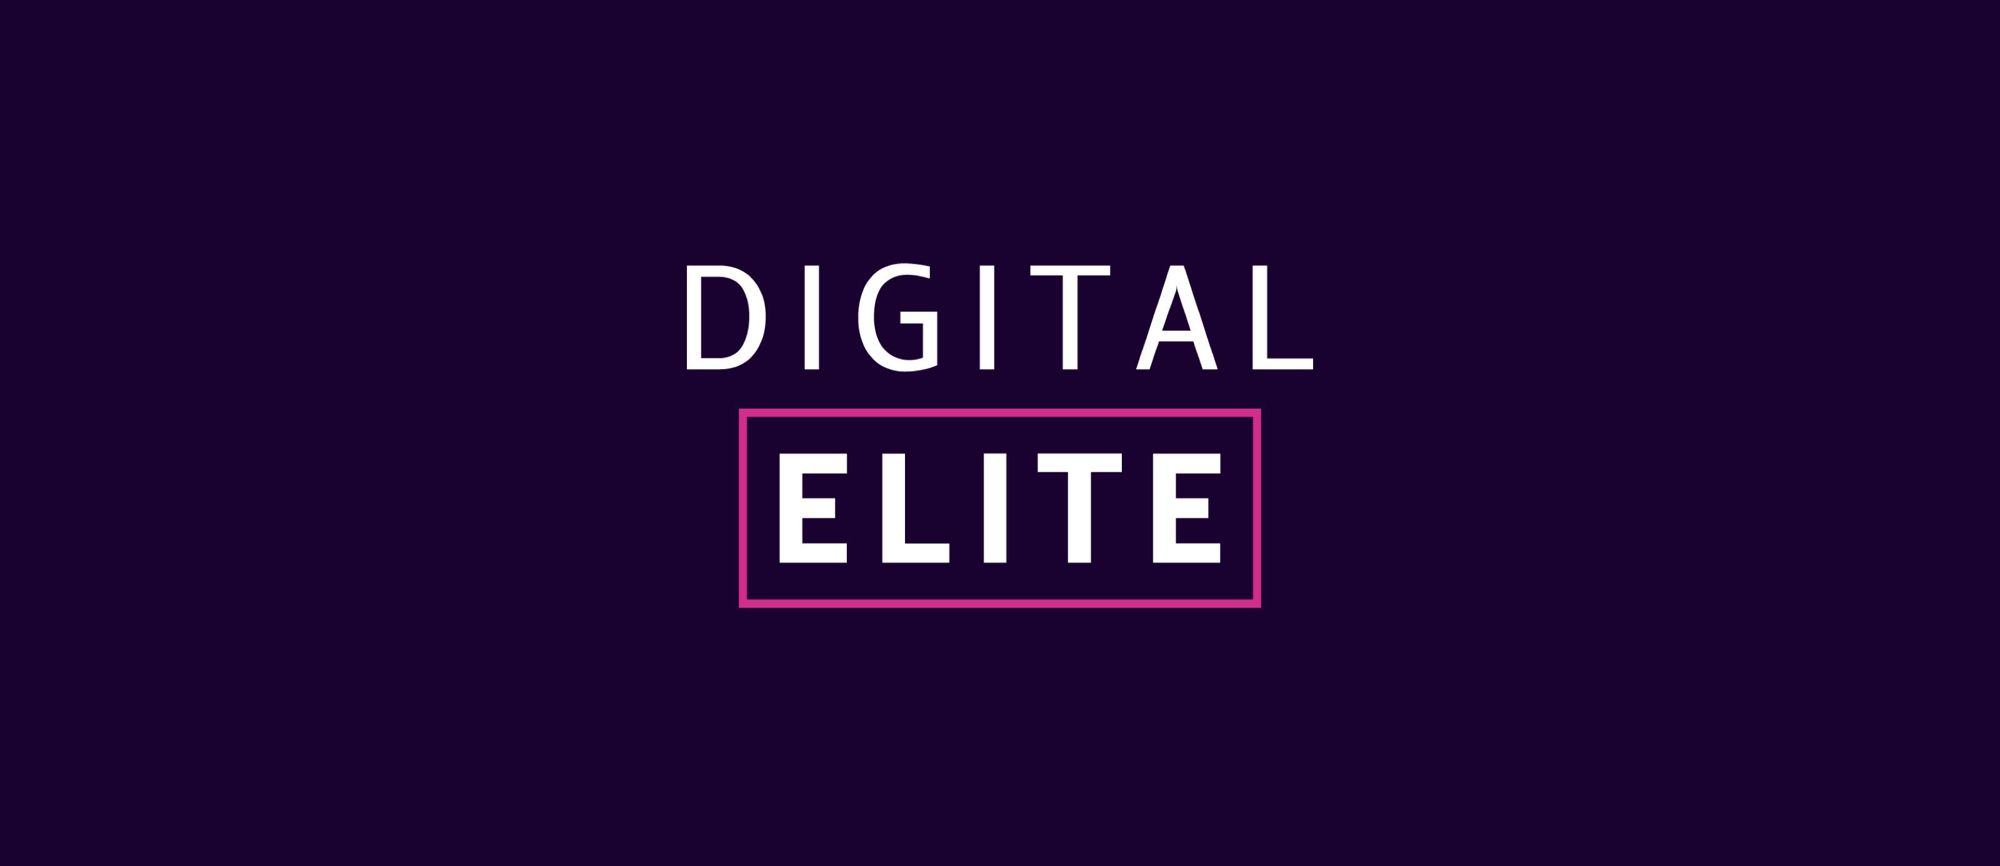 Enjoy Digital becomes an official partner with Digital Elite Hub